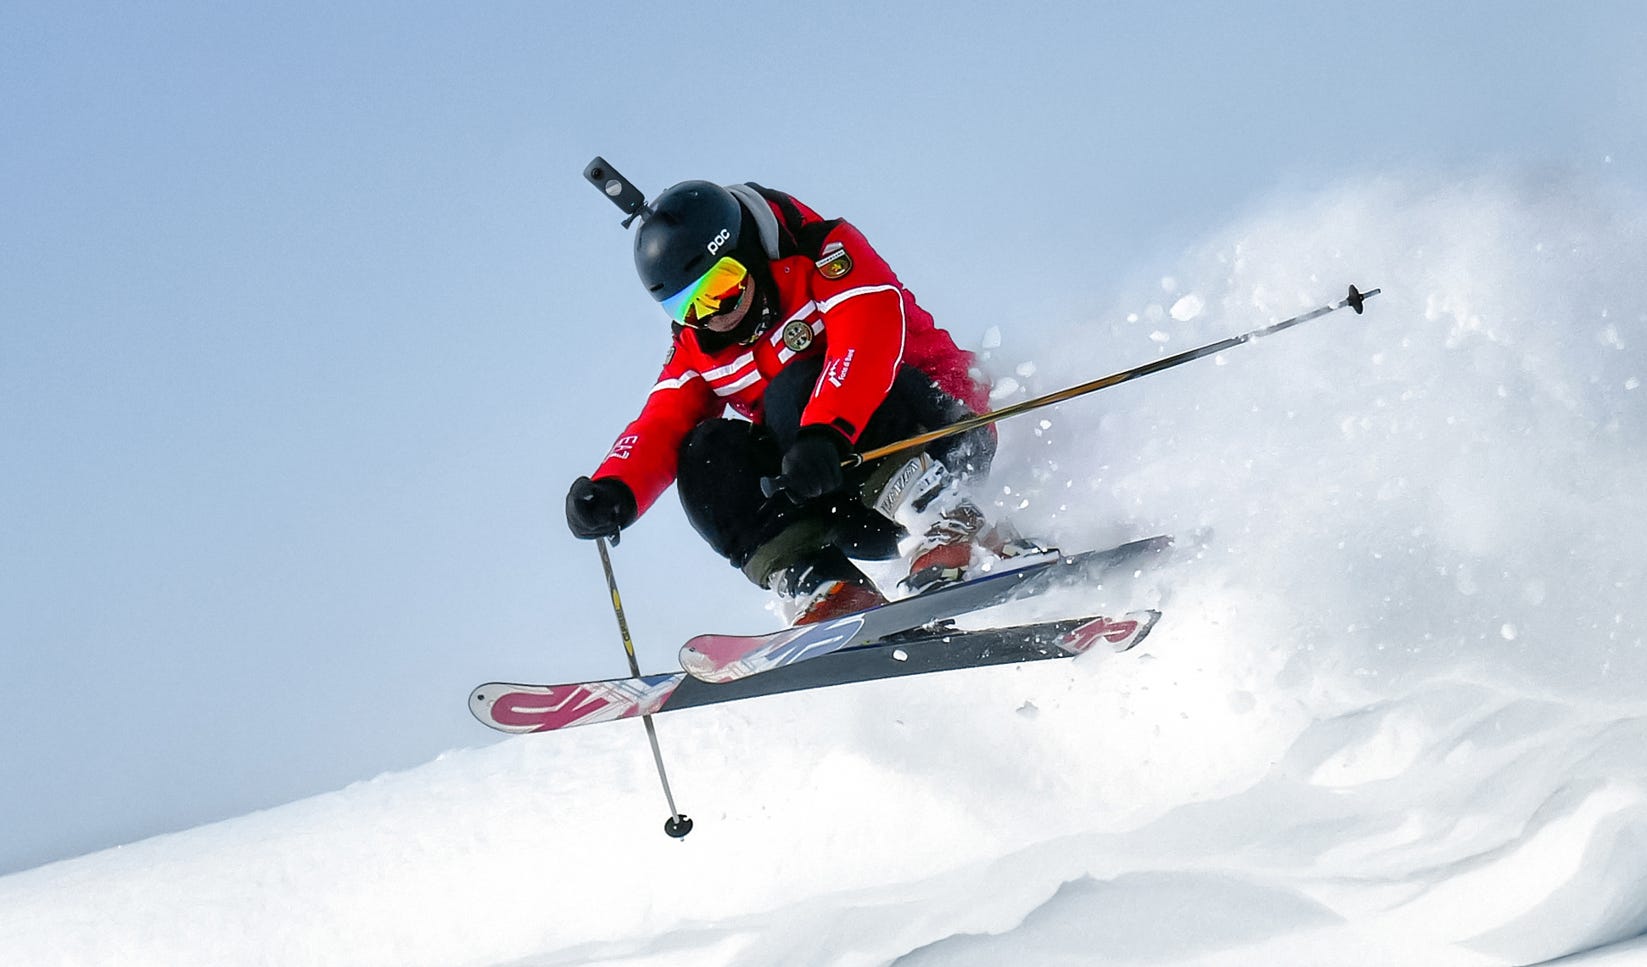 Best high-tech ski gear for 2022 - CNET